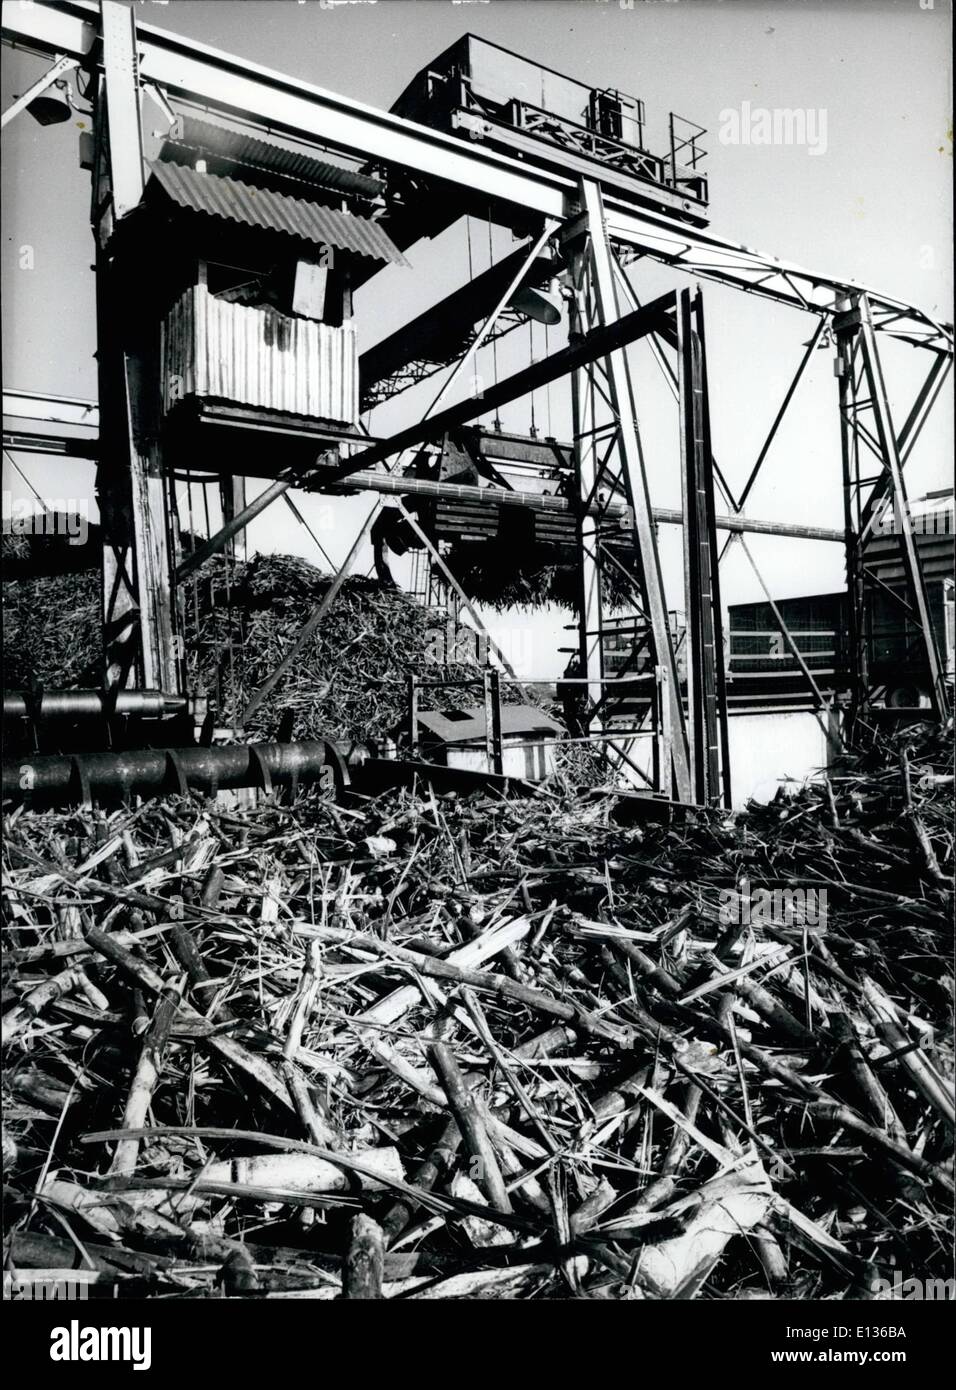 28 févr. 2012 - canne à sucre récoltée est empilé pour le broyeur à Pembroke Hall, de la Tate et Lyle Sugar Refinery près de Corazal, Honduras britannique. Banque D'Images